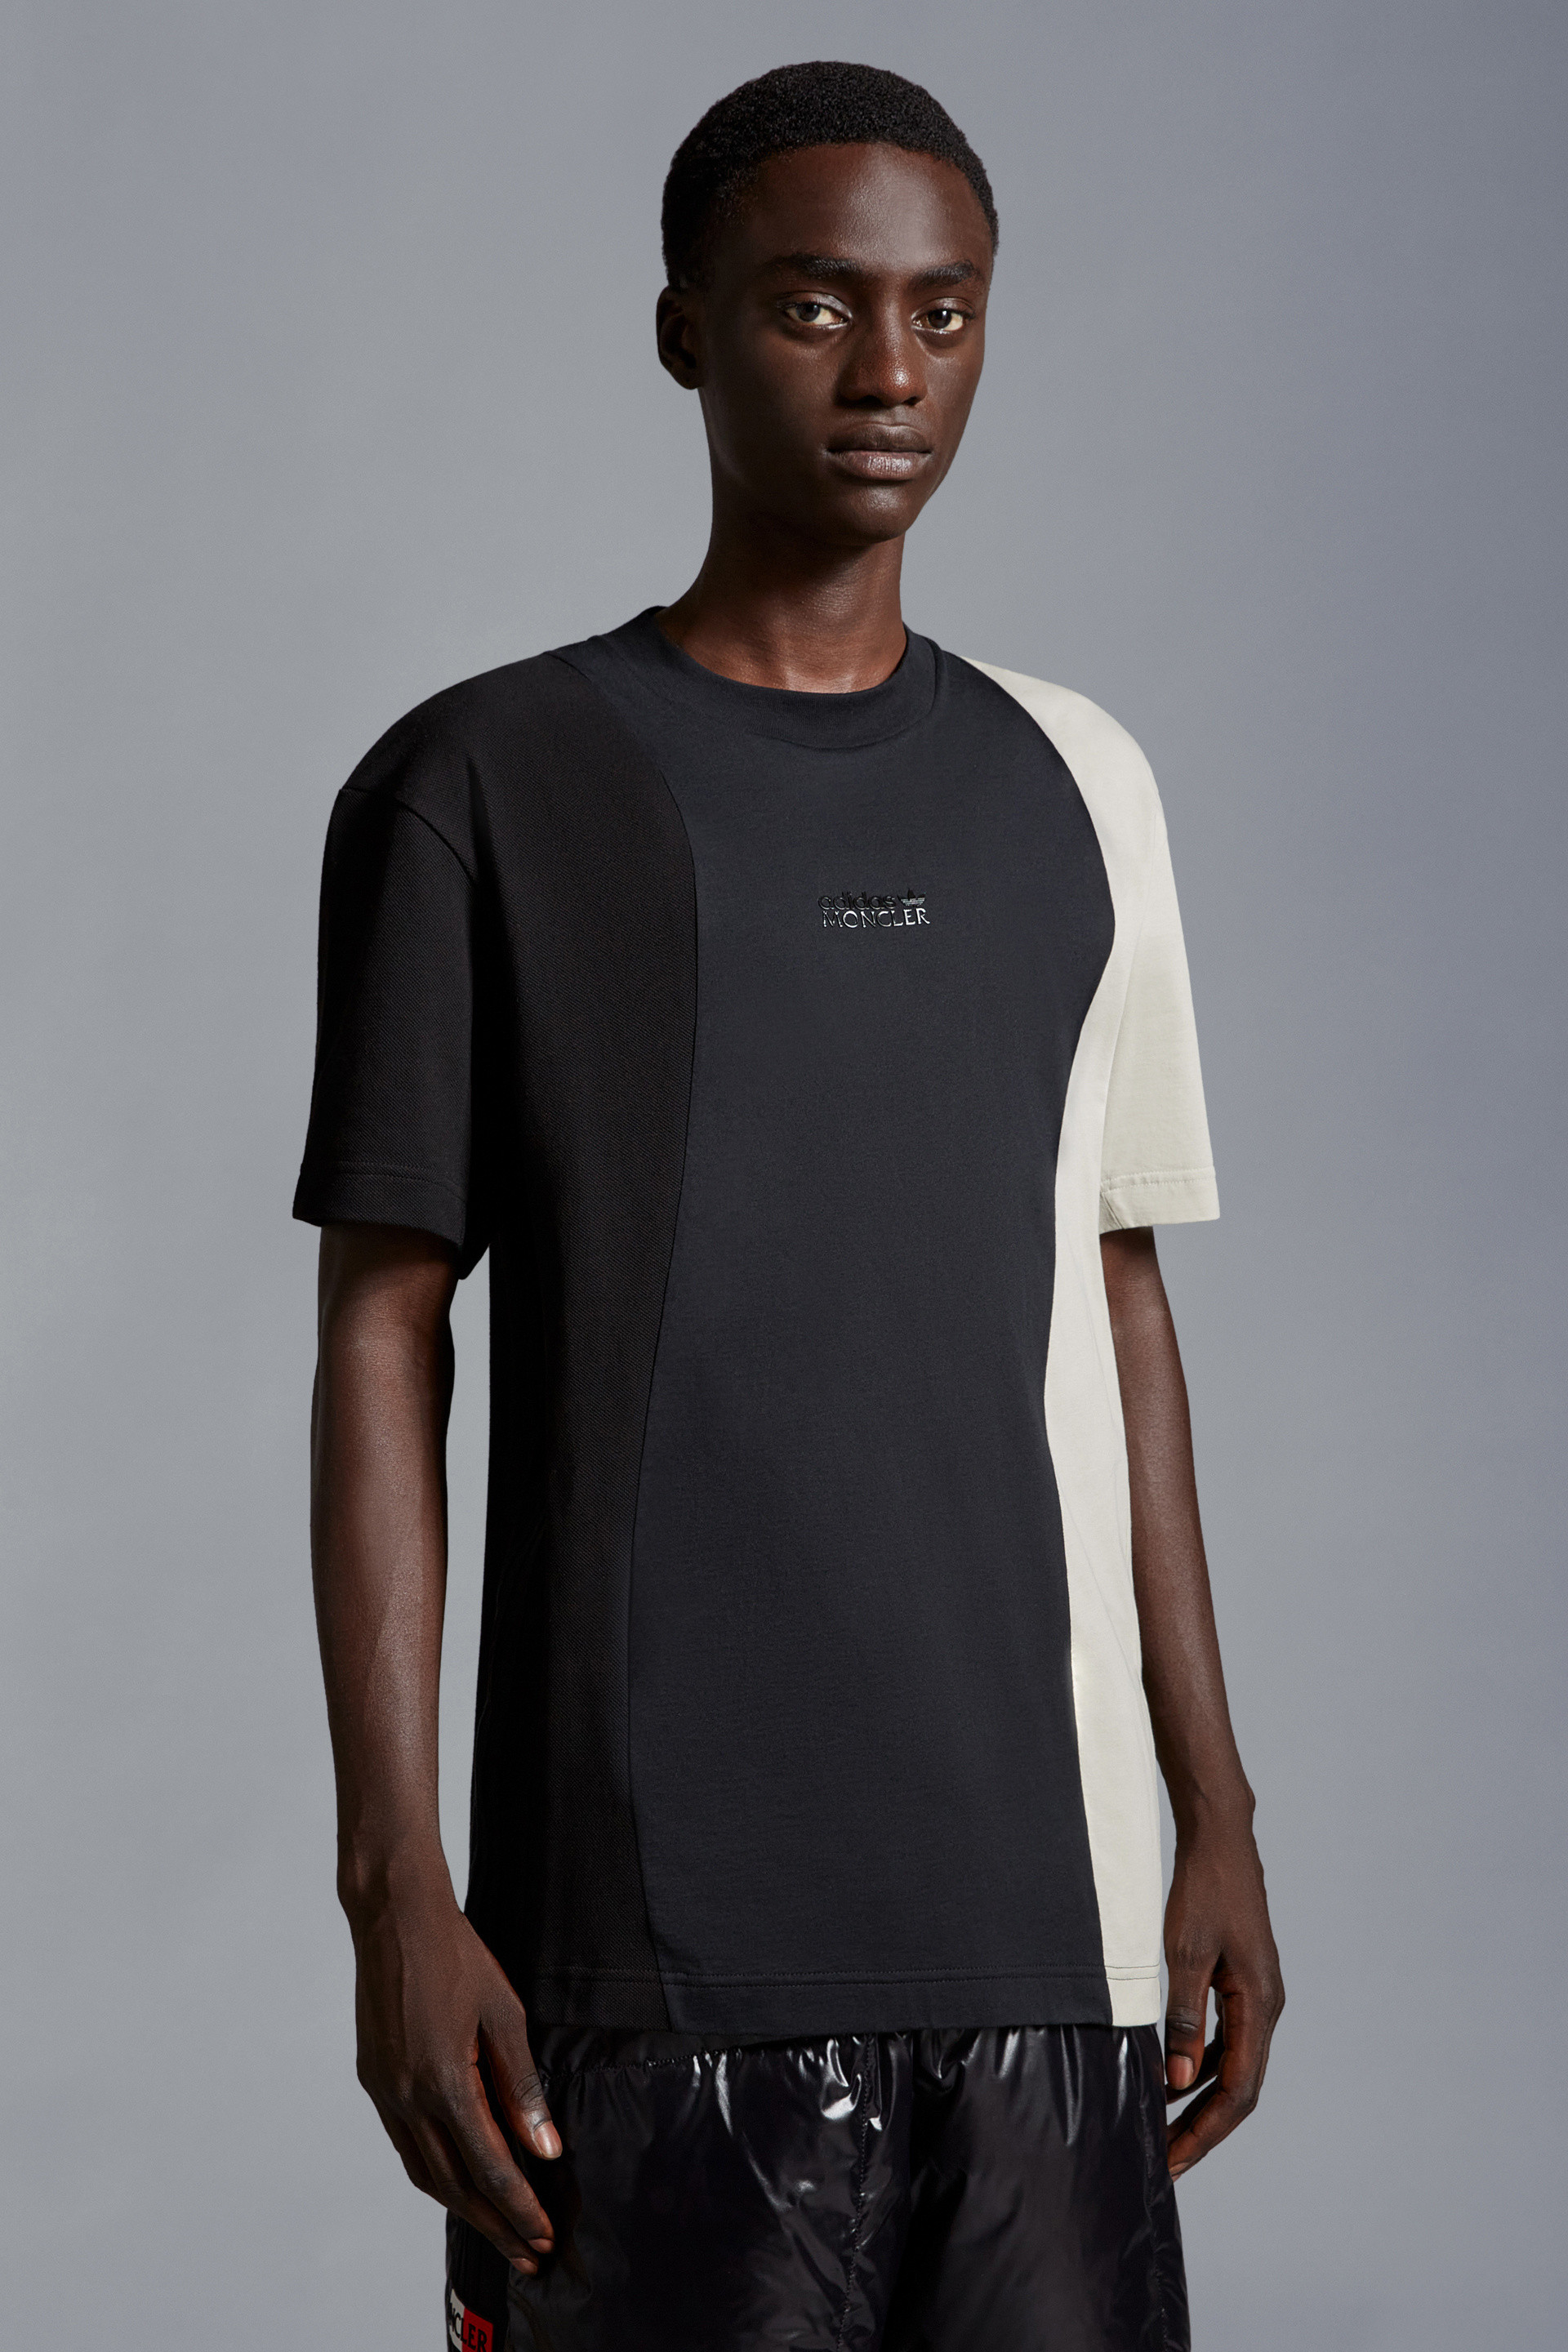 ブラック & ホワイト Tシャツ : Moncler x adidas Originals 向けの